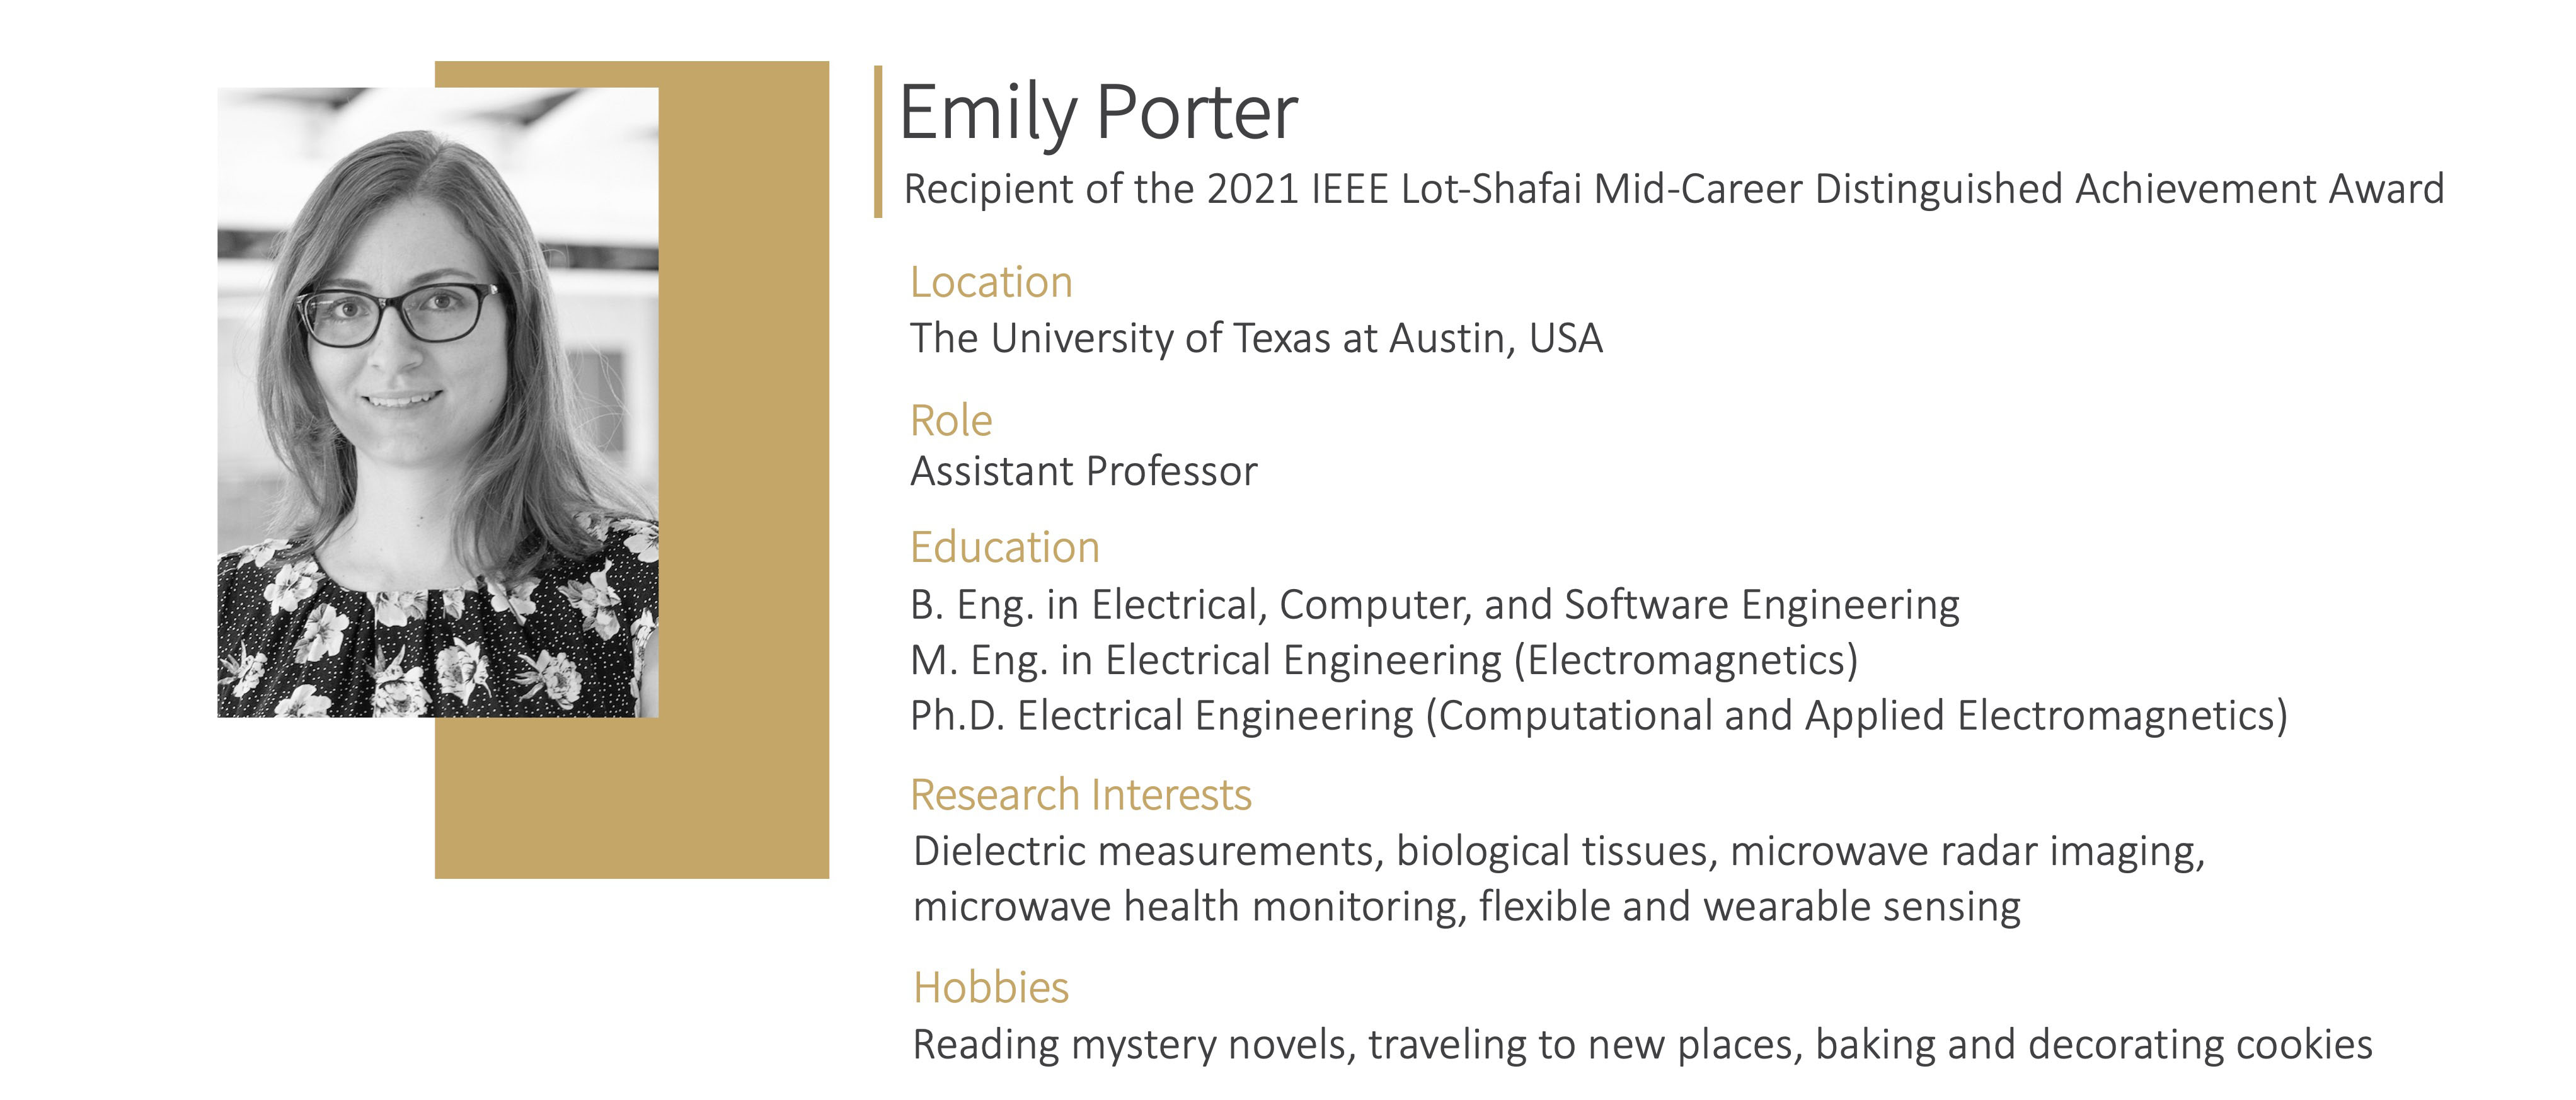 Emily Porter